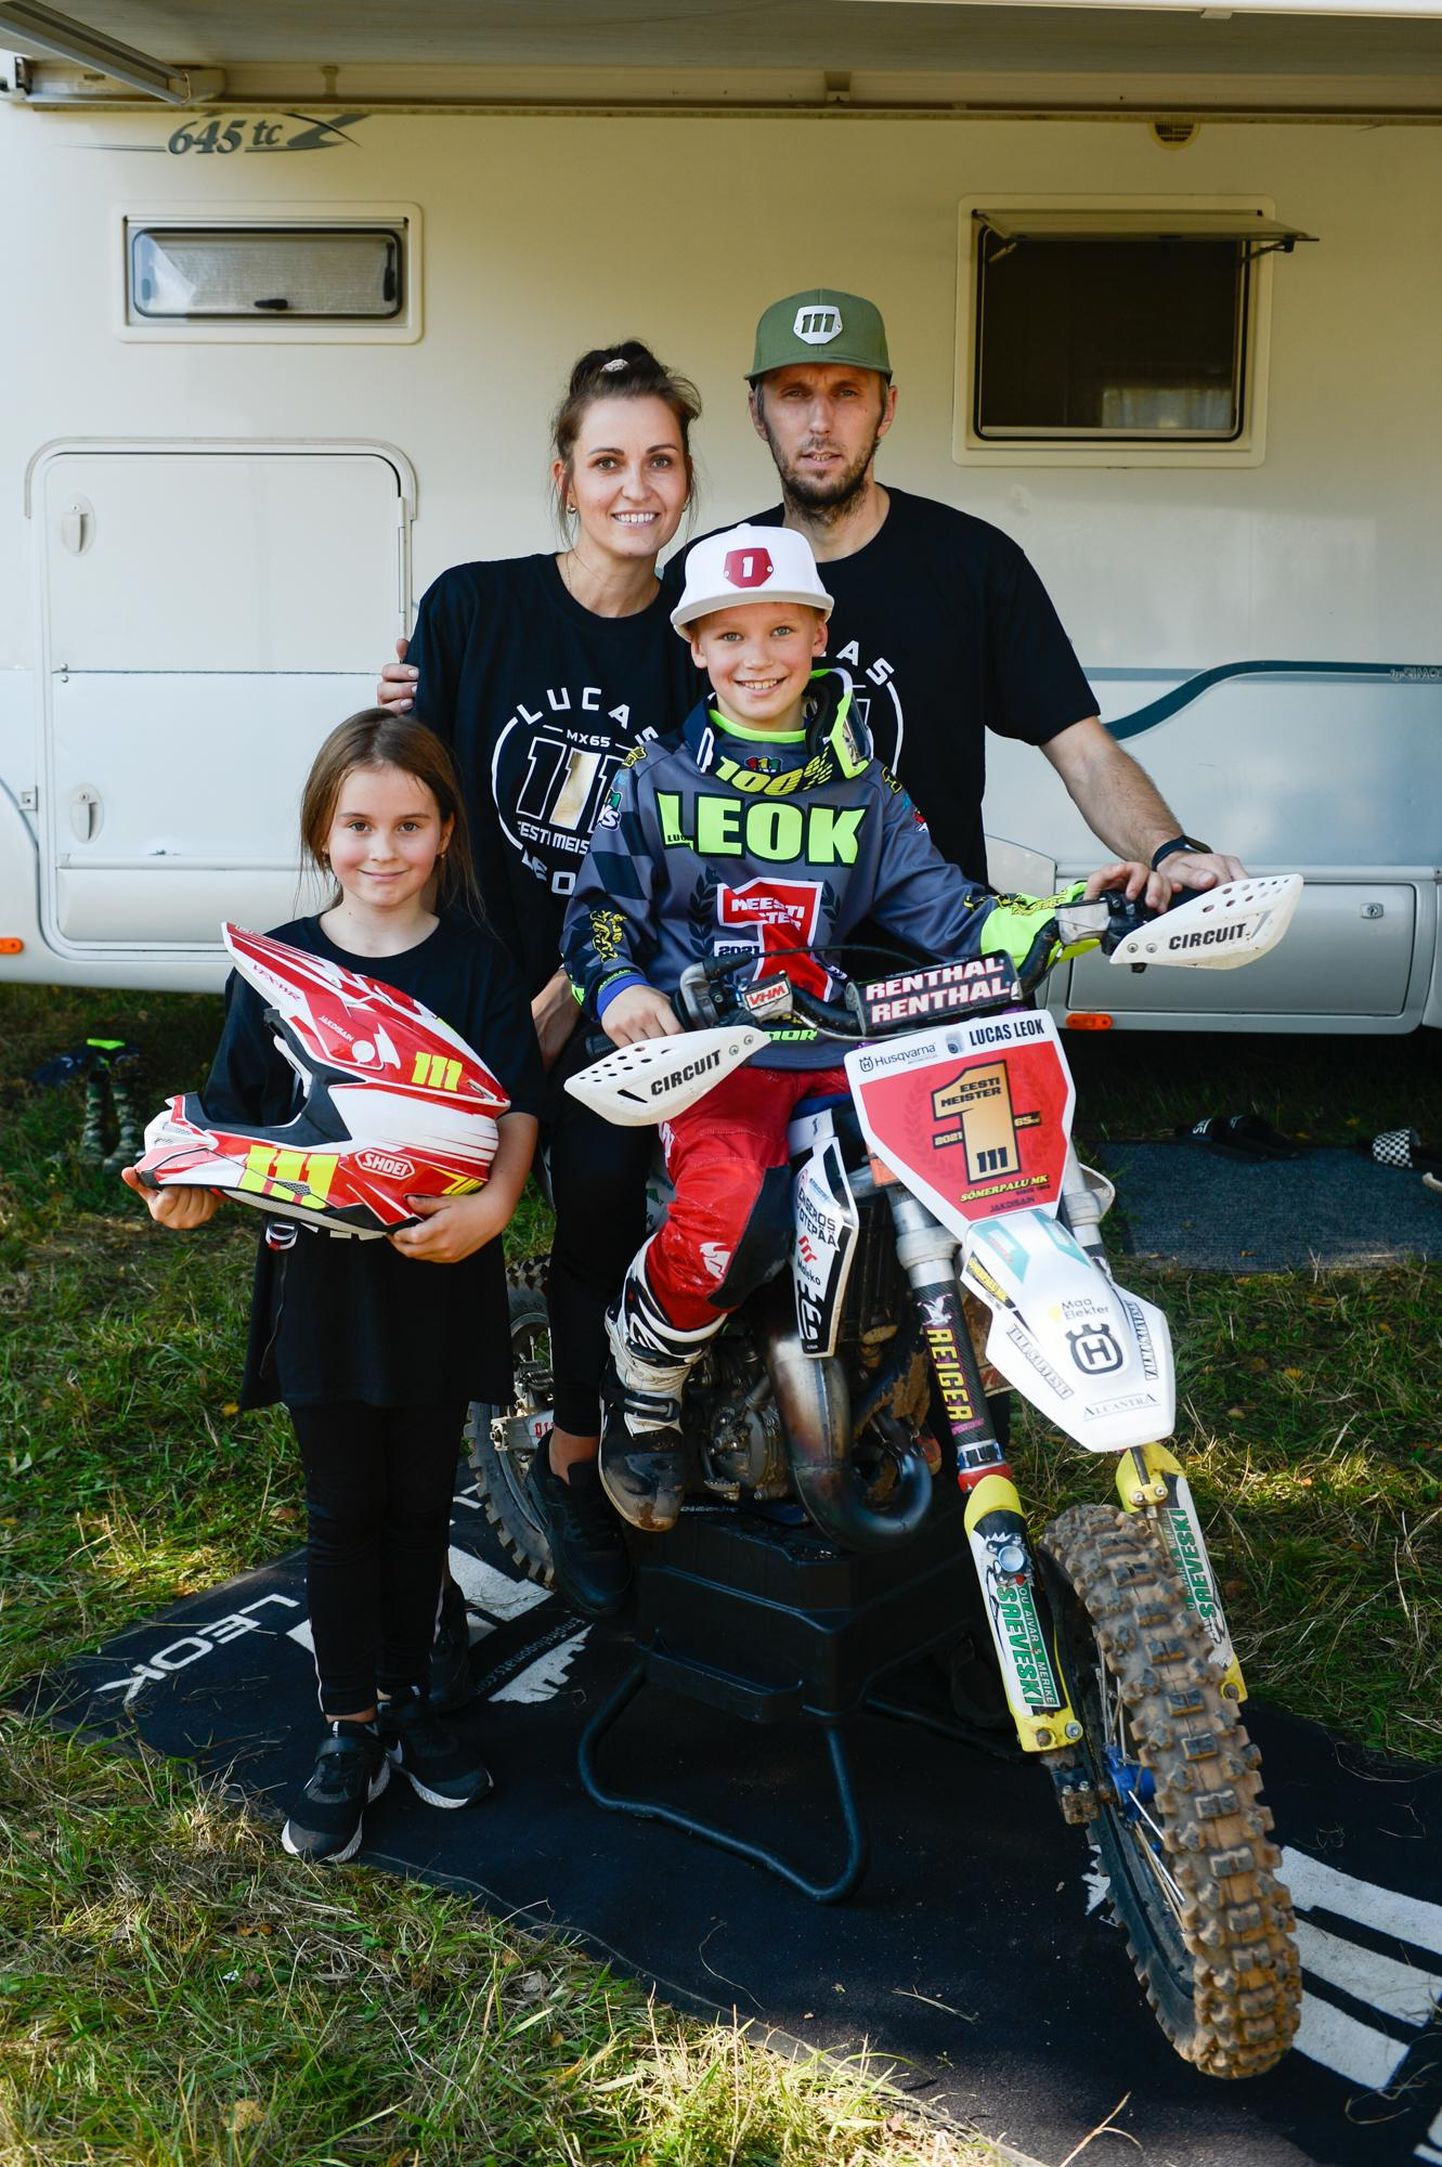 Юный чемпион Лукас Леок с семьей: слева от него - сестра Люсия, позади - мама Трийн и отец Айгар.